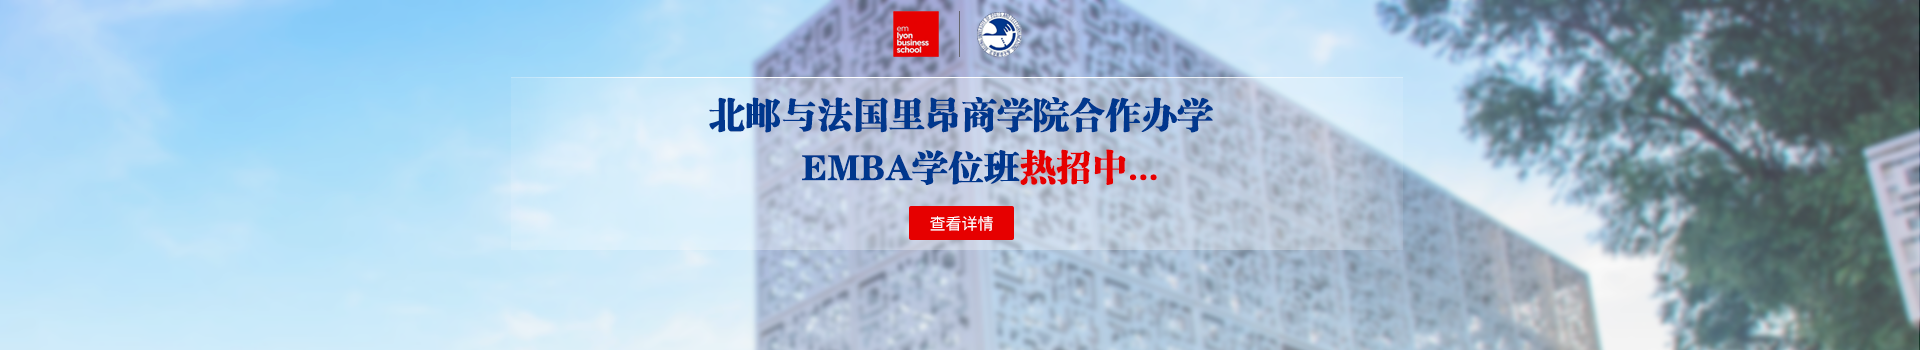 北京邮电大学与法国里昂商学院合作办学EMBA学位班招生简章